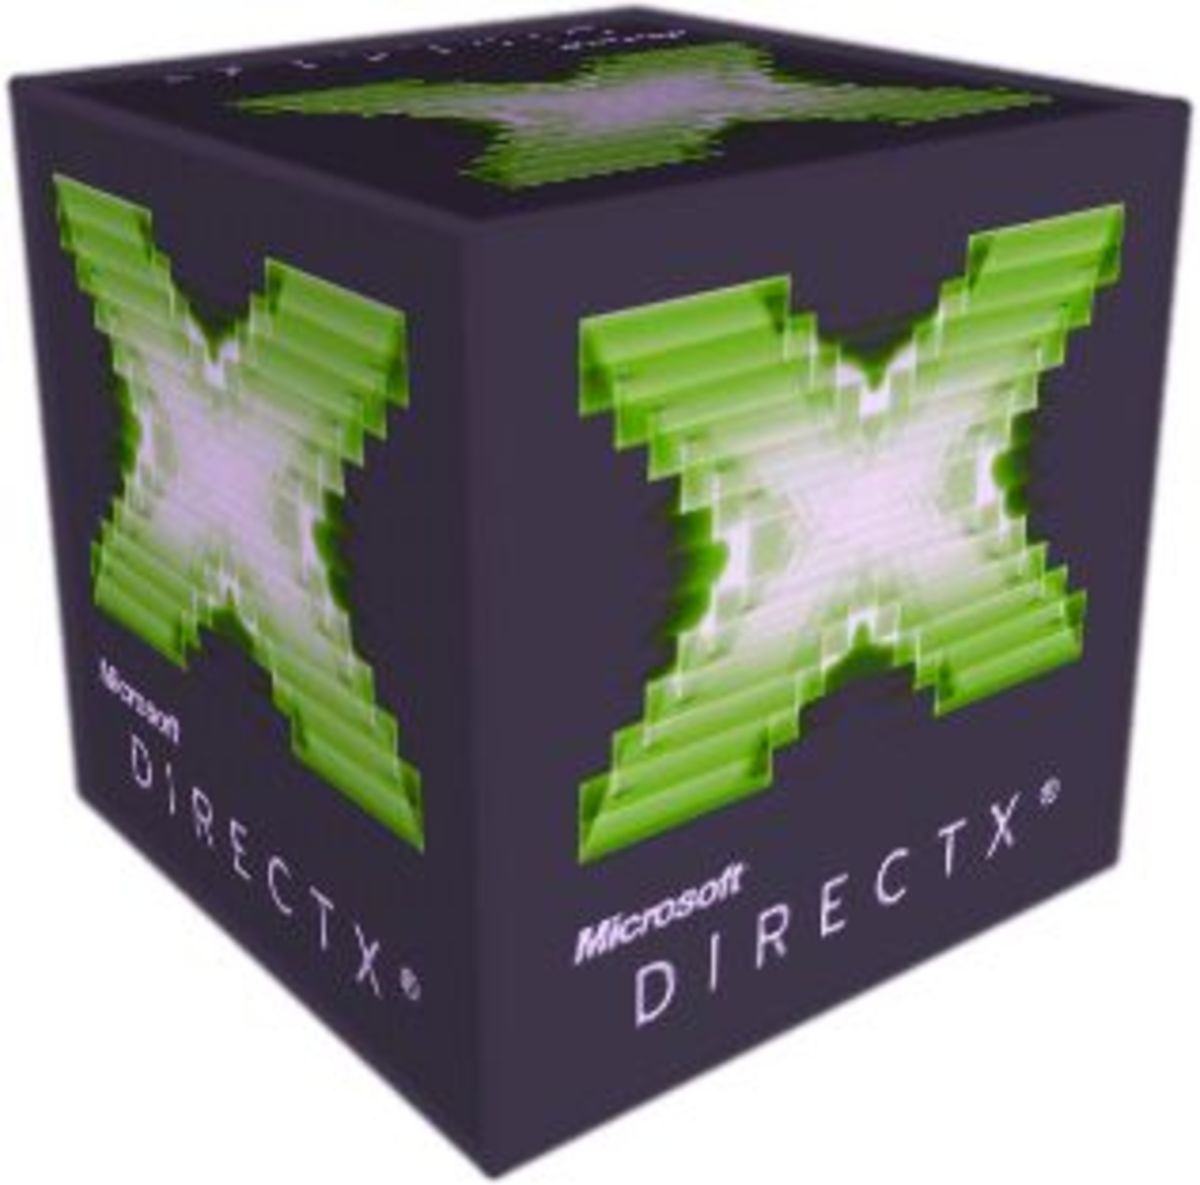 PPT - GameFX C# / DirectX 2005 PowerPoint Presentation, free download - ID:3419418